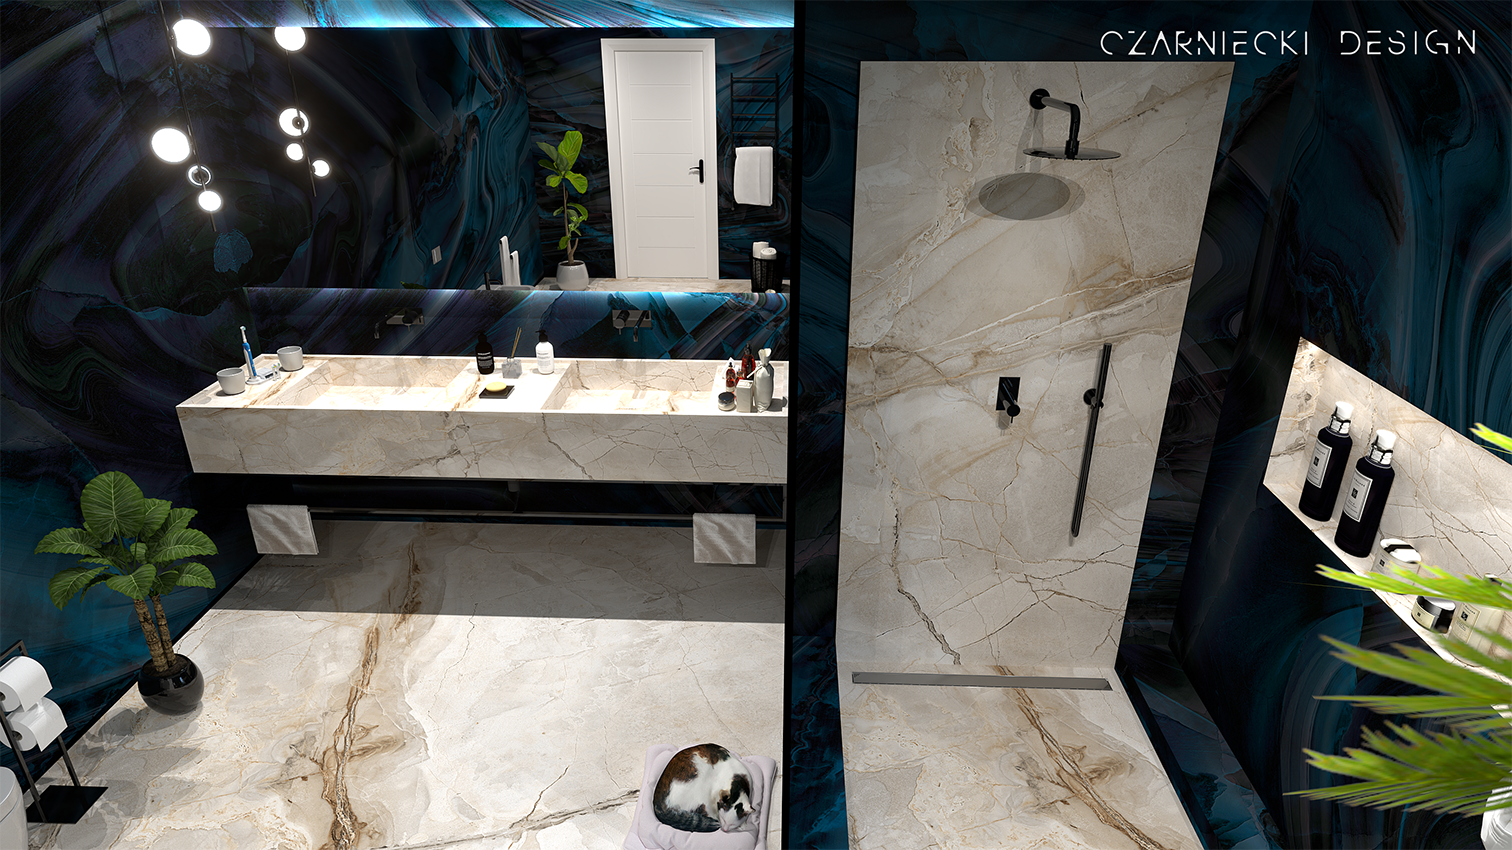 Projekt łazienki wykonany przez Studio Czarniecki Design w którym zastosowano specjalnie barwiony błękitny onyx.